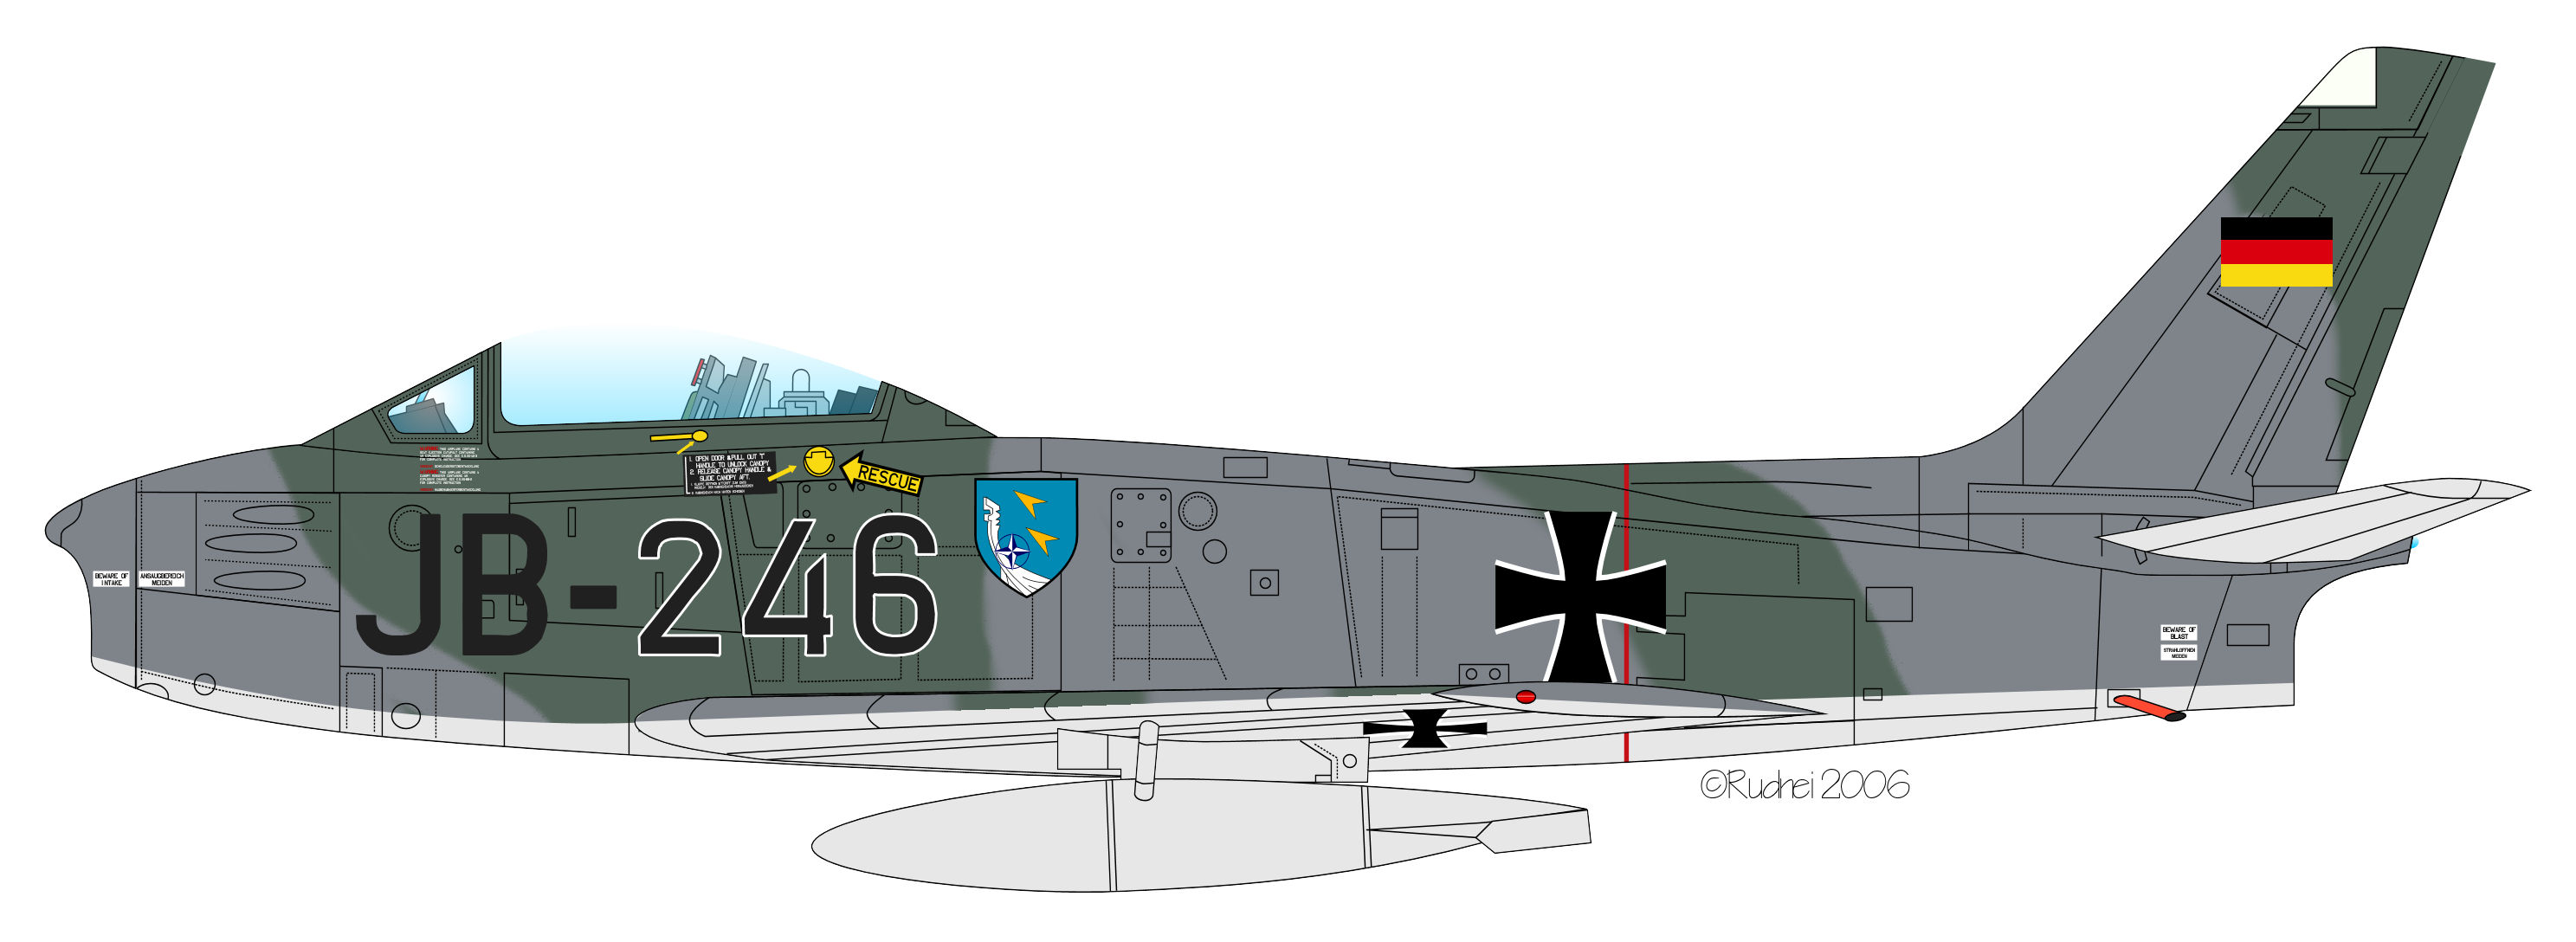 Sabre 6 JB-246 JaboG43 Luftwaffe